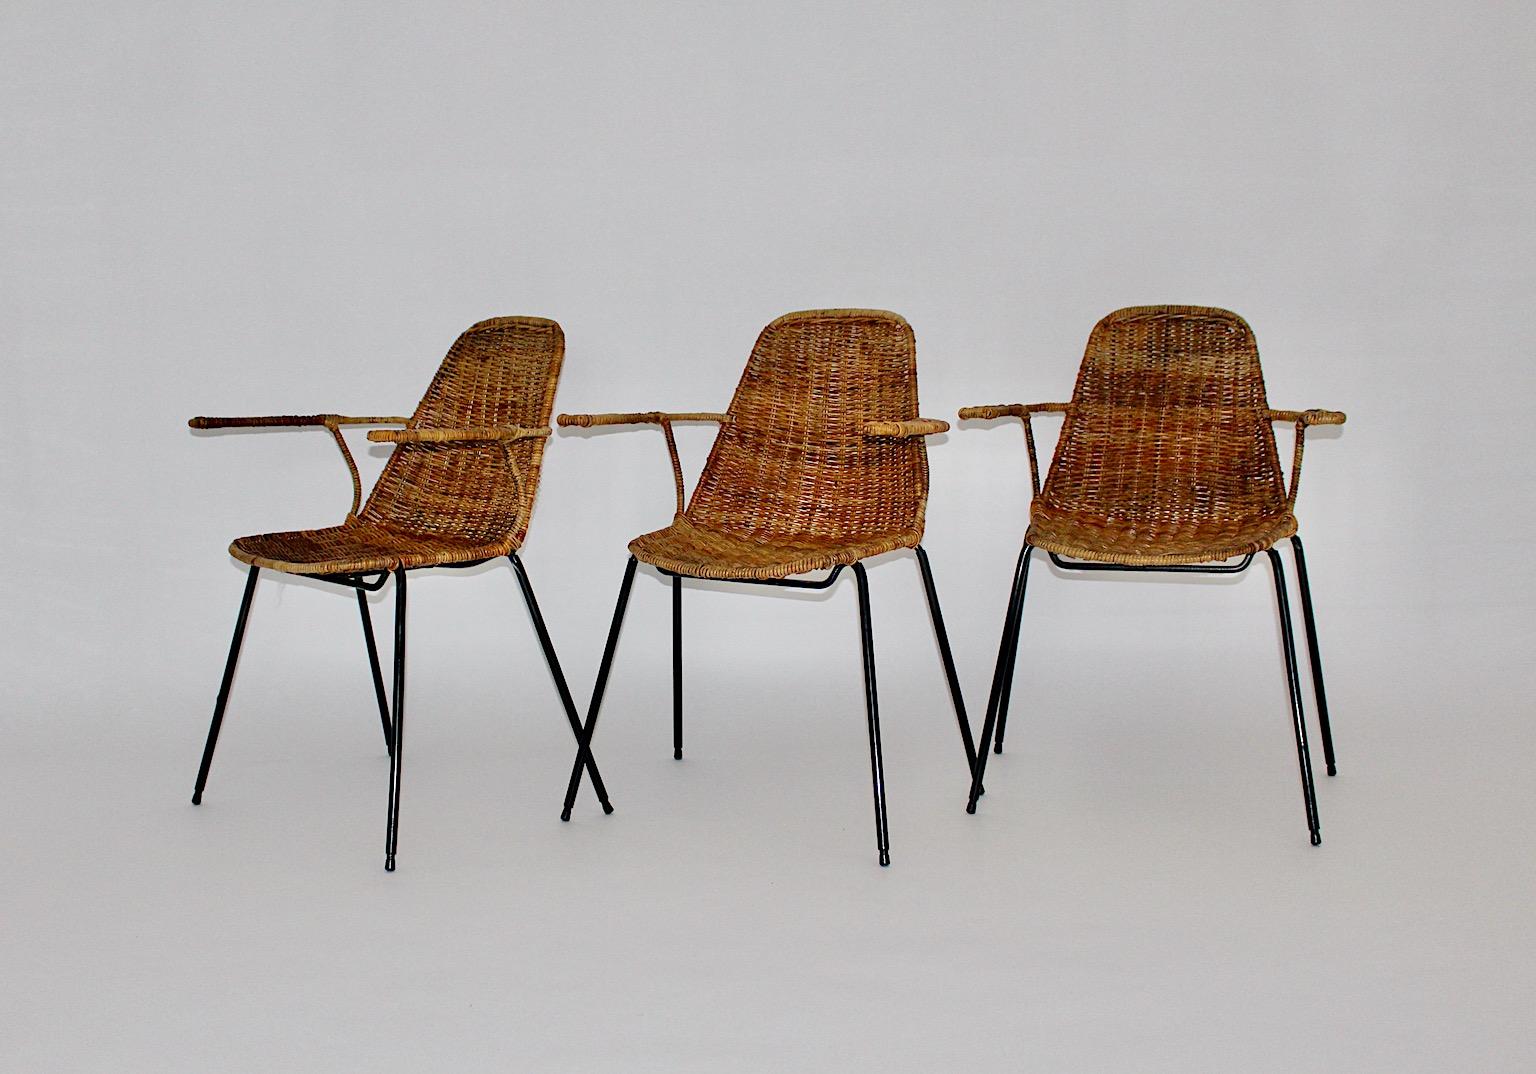 Mid Century Modern vintage authentisch drei Esszimmerstühle oder Stühle mit Armlehnen aus Rattan und Metall von Gian Franco Legler 1950er Jahre Schweiz.
Ein fabelhaftes und seltenes Set von drei Stühlen mit Armlehnen mit einer sehr bequemen